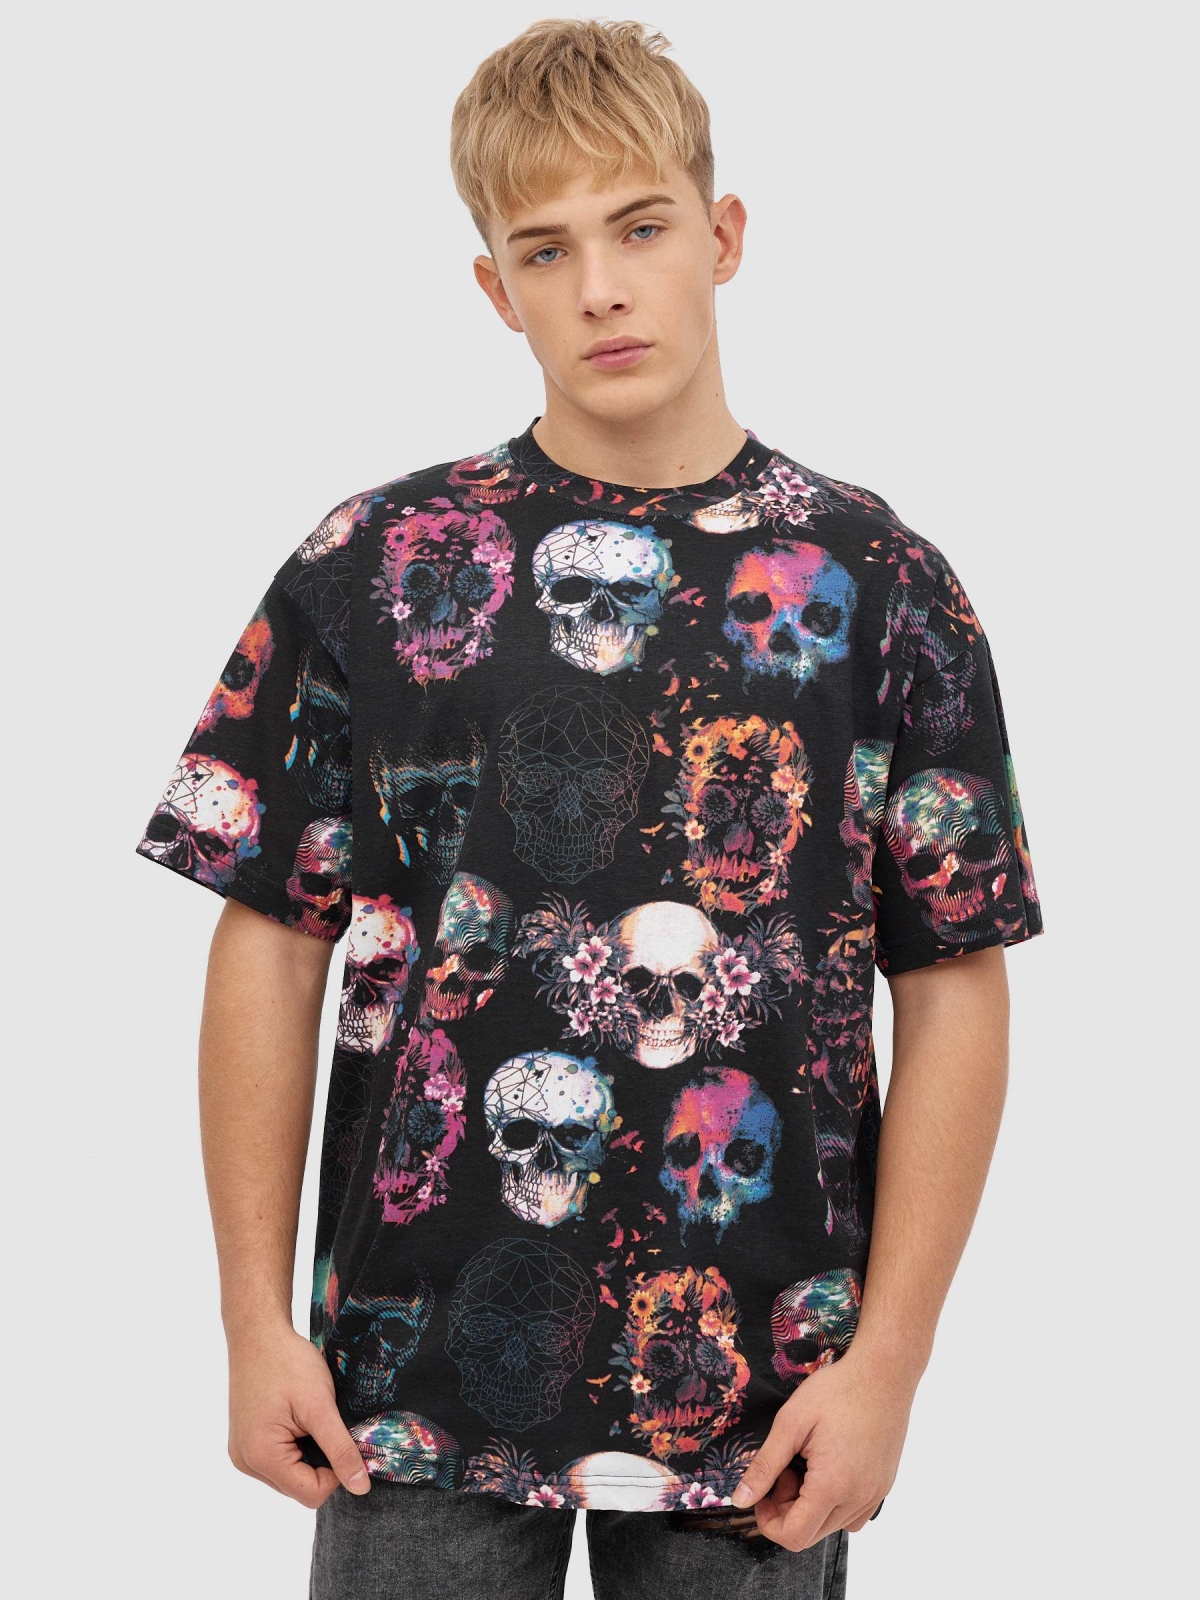 T-shirt multicolorida com caveira preto vista meia frontal